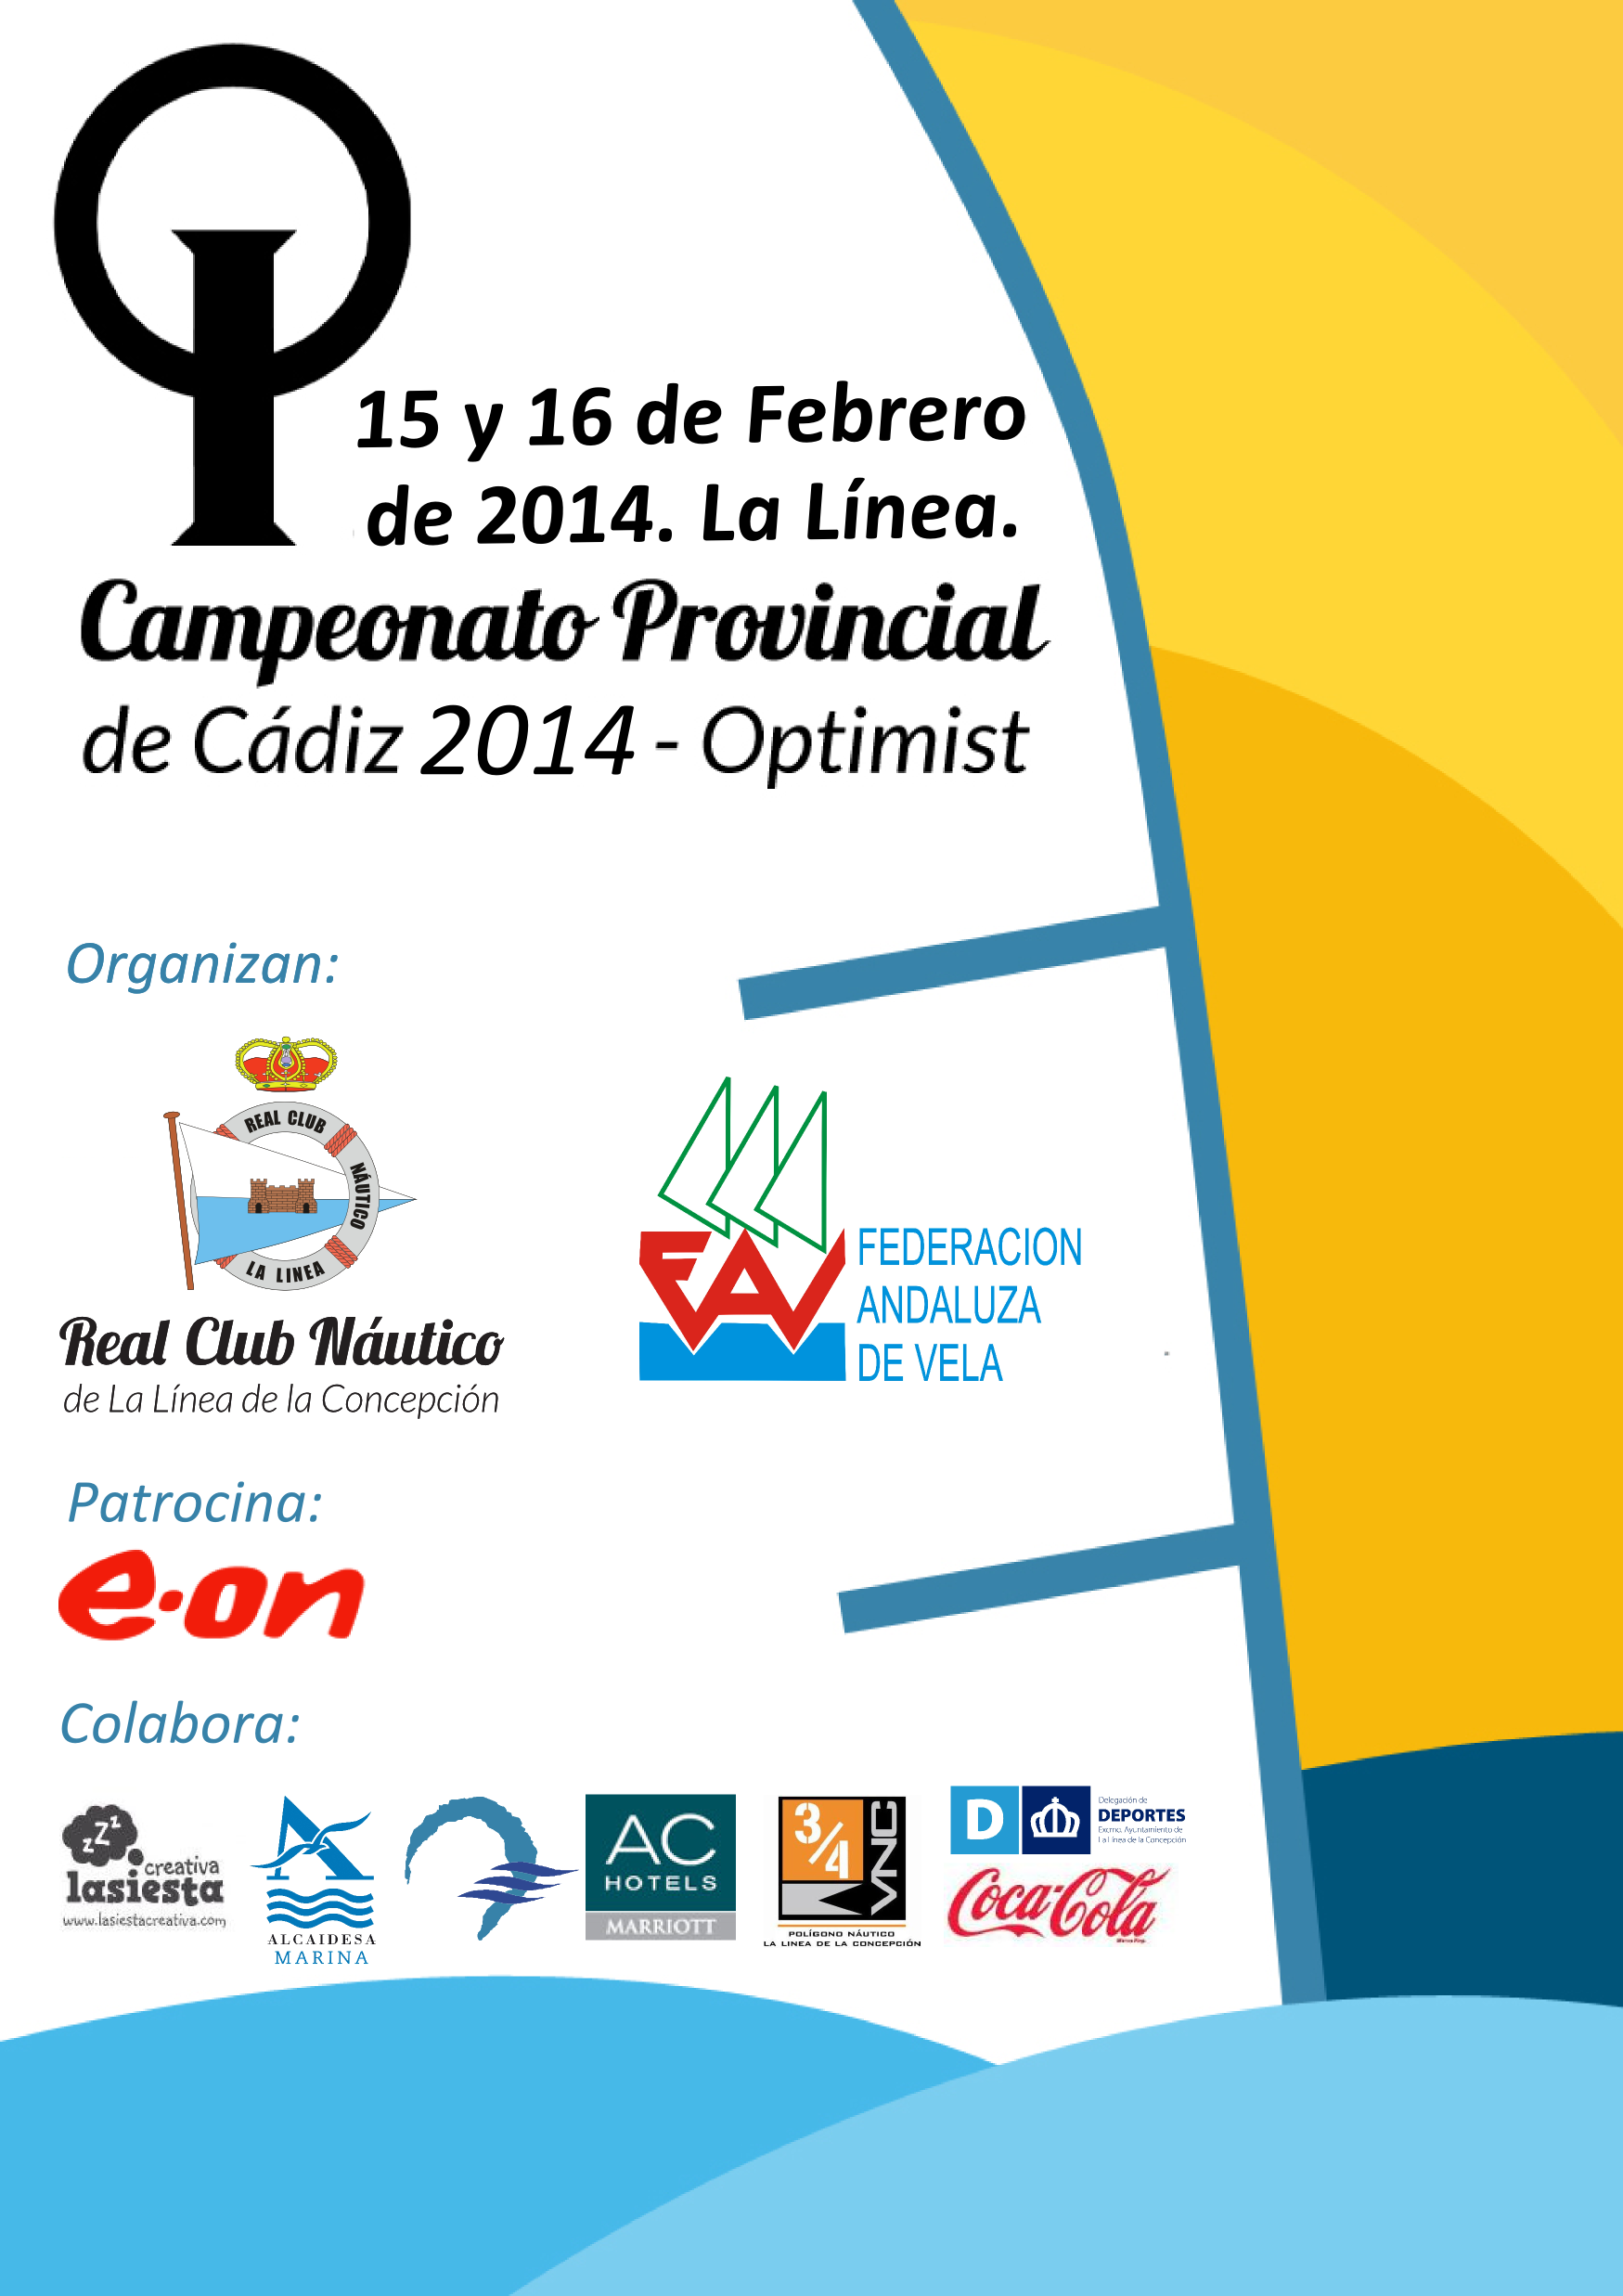 El puerto deportivo Alcaidesa Marina acoge la Regata del Campeonato Provincial de Optimist organizada por el Real Club Náutico de la Línea